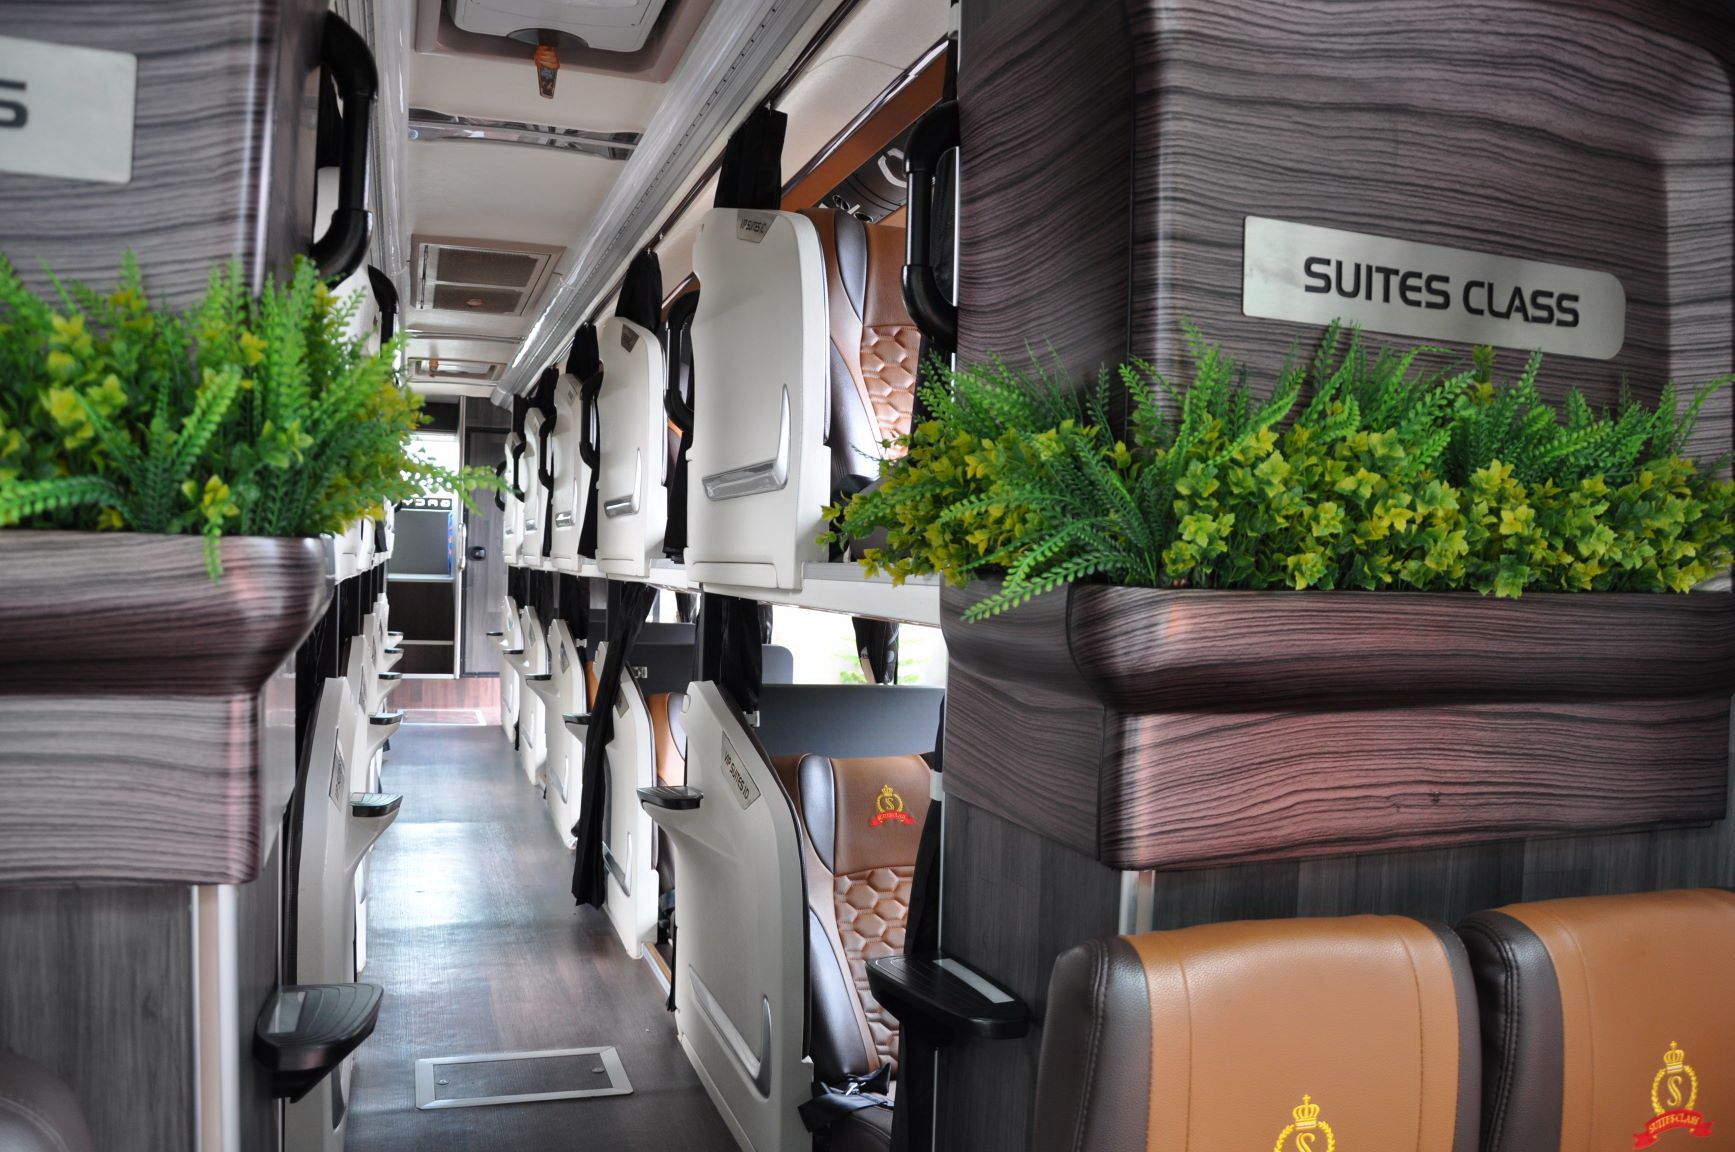  Suites Class Bus hadir dengan 21 tempat duduk, yang diklaim dalam tingkat kemewahan dan kenyamanan dengan privasi yang tinggi./Dok. HMSI